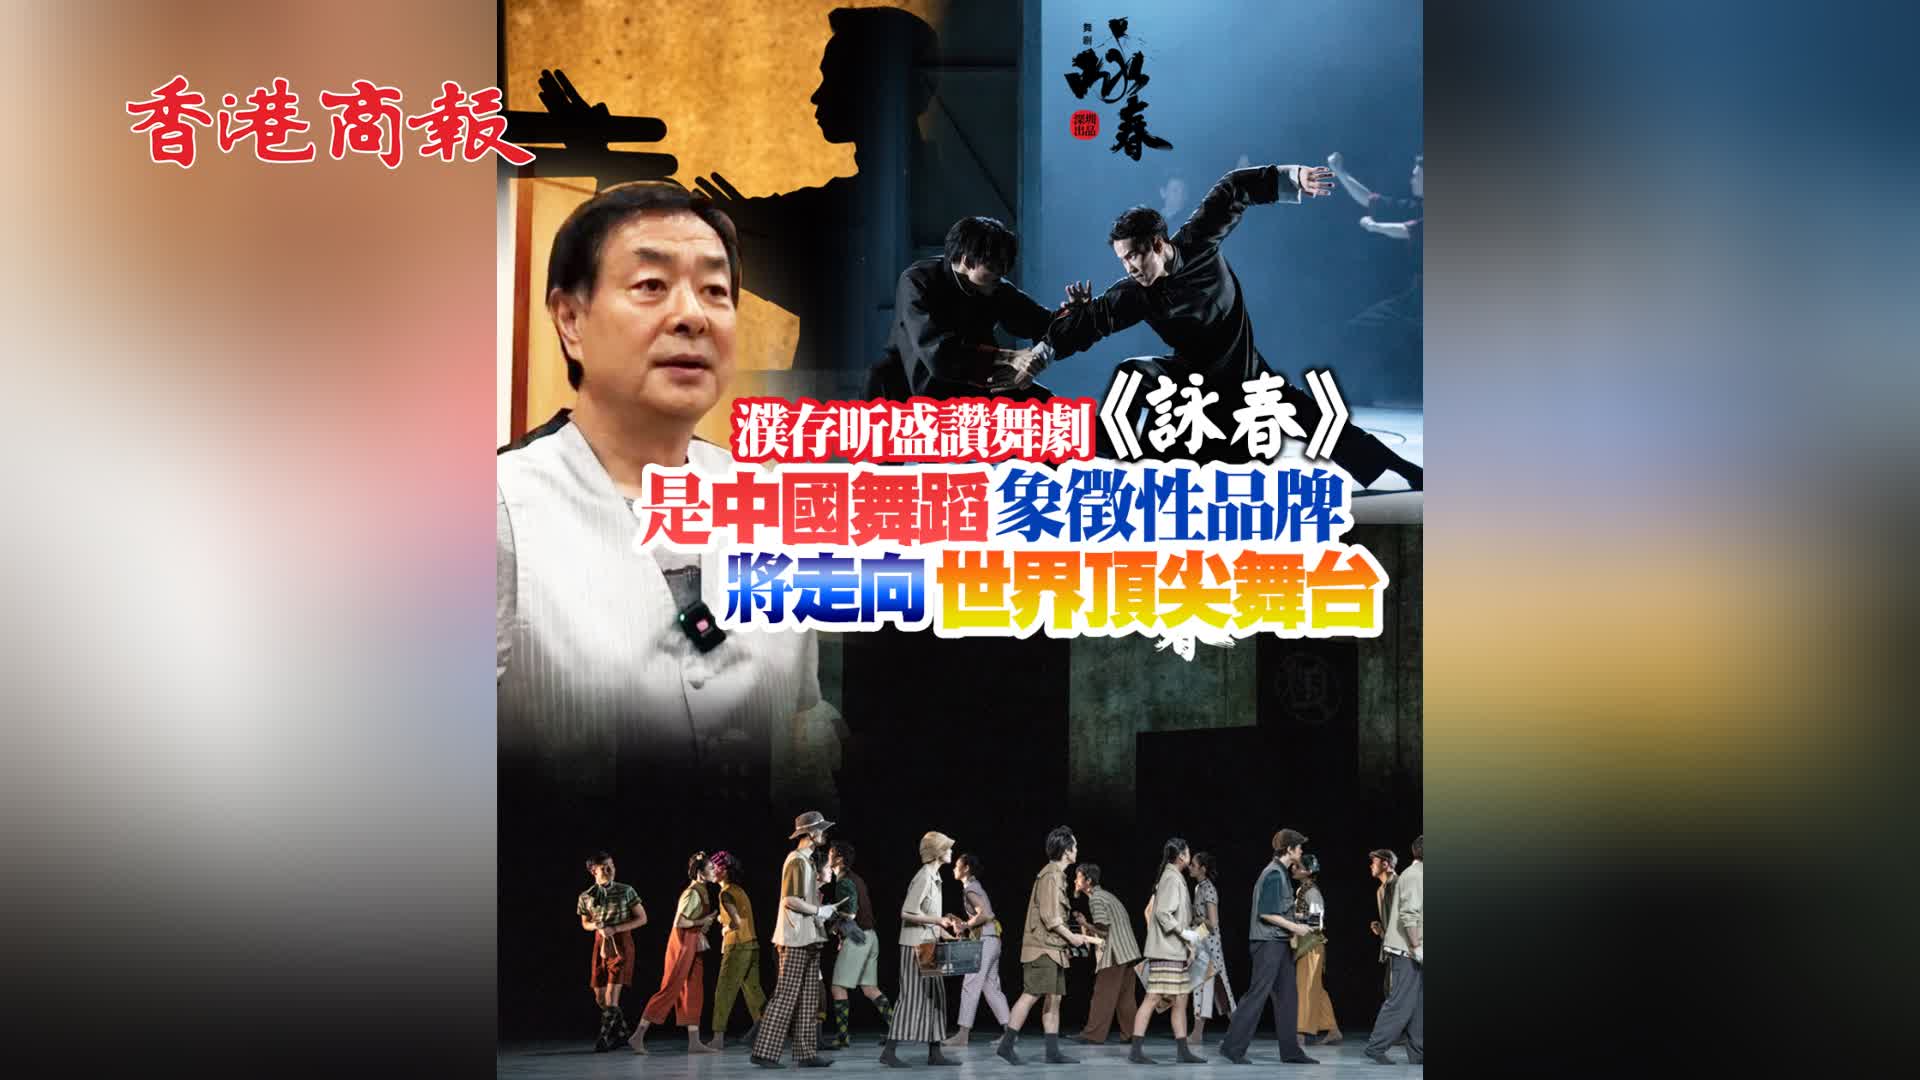 有片｜濮存昕盛讚舞劇《詠春》：是中國舞蹈象徵性品牌 將走向世界頂尖舞台